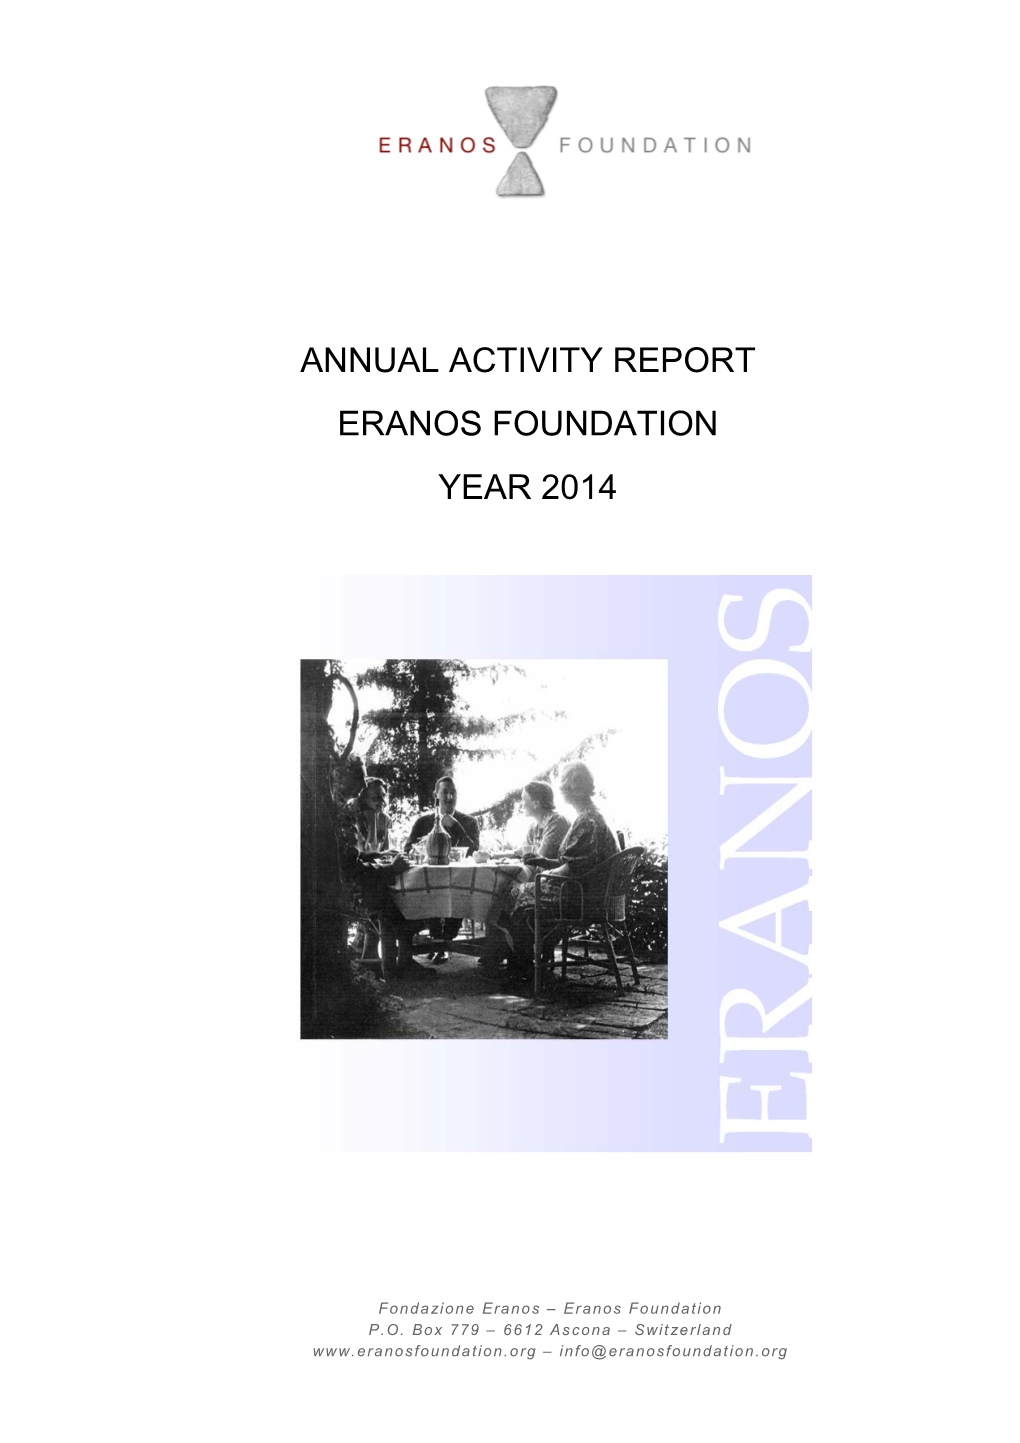 Report 2014 of the Eranos Foundation